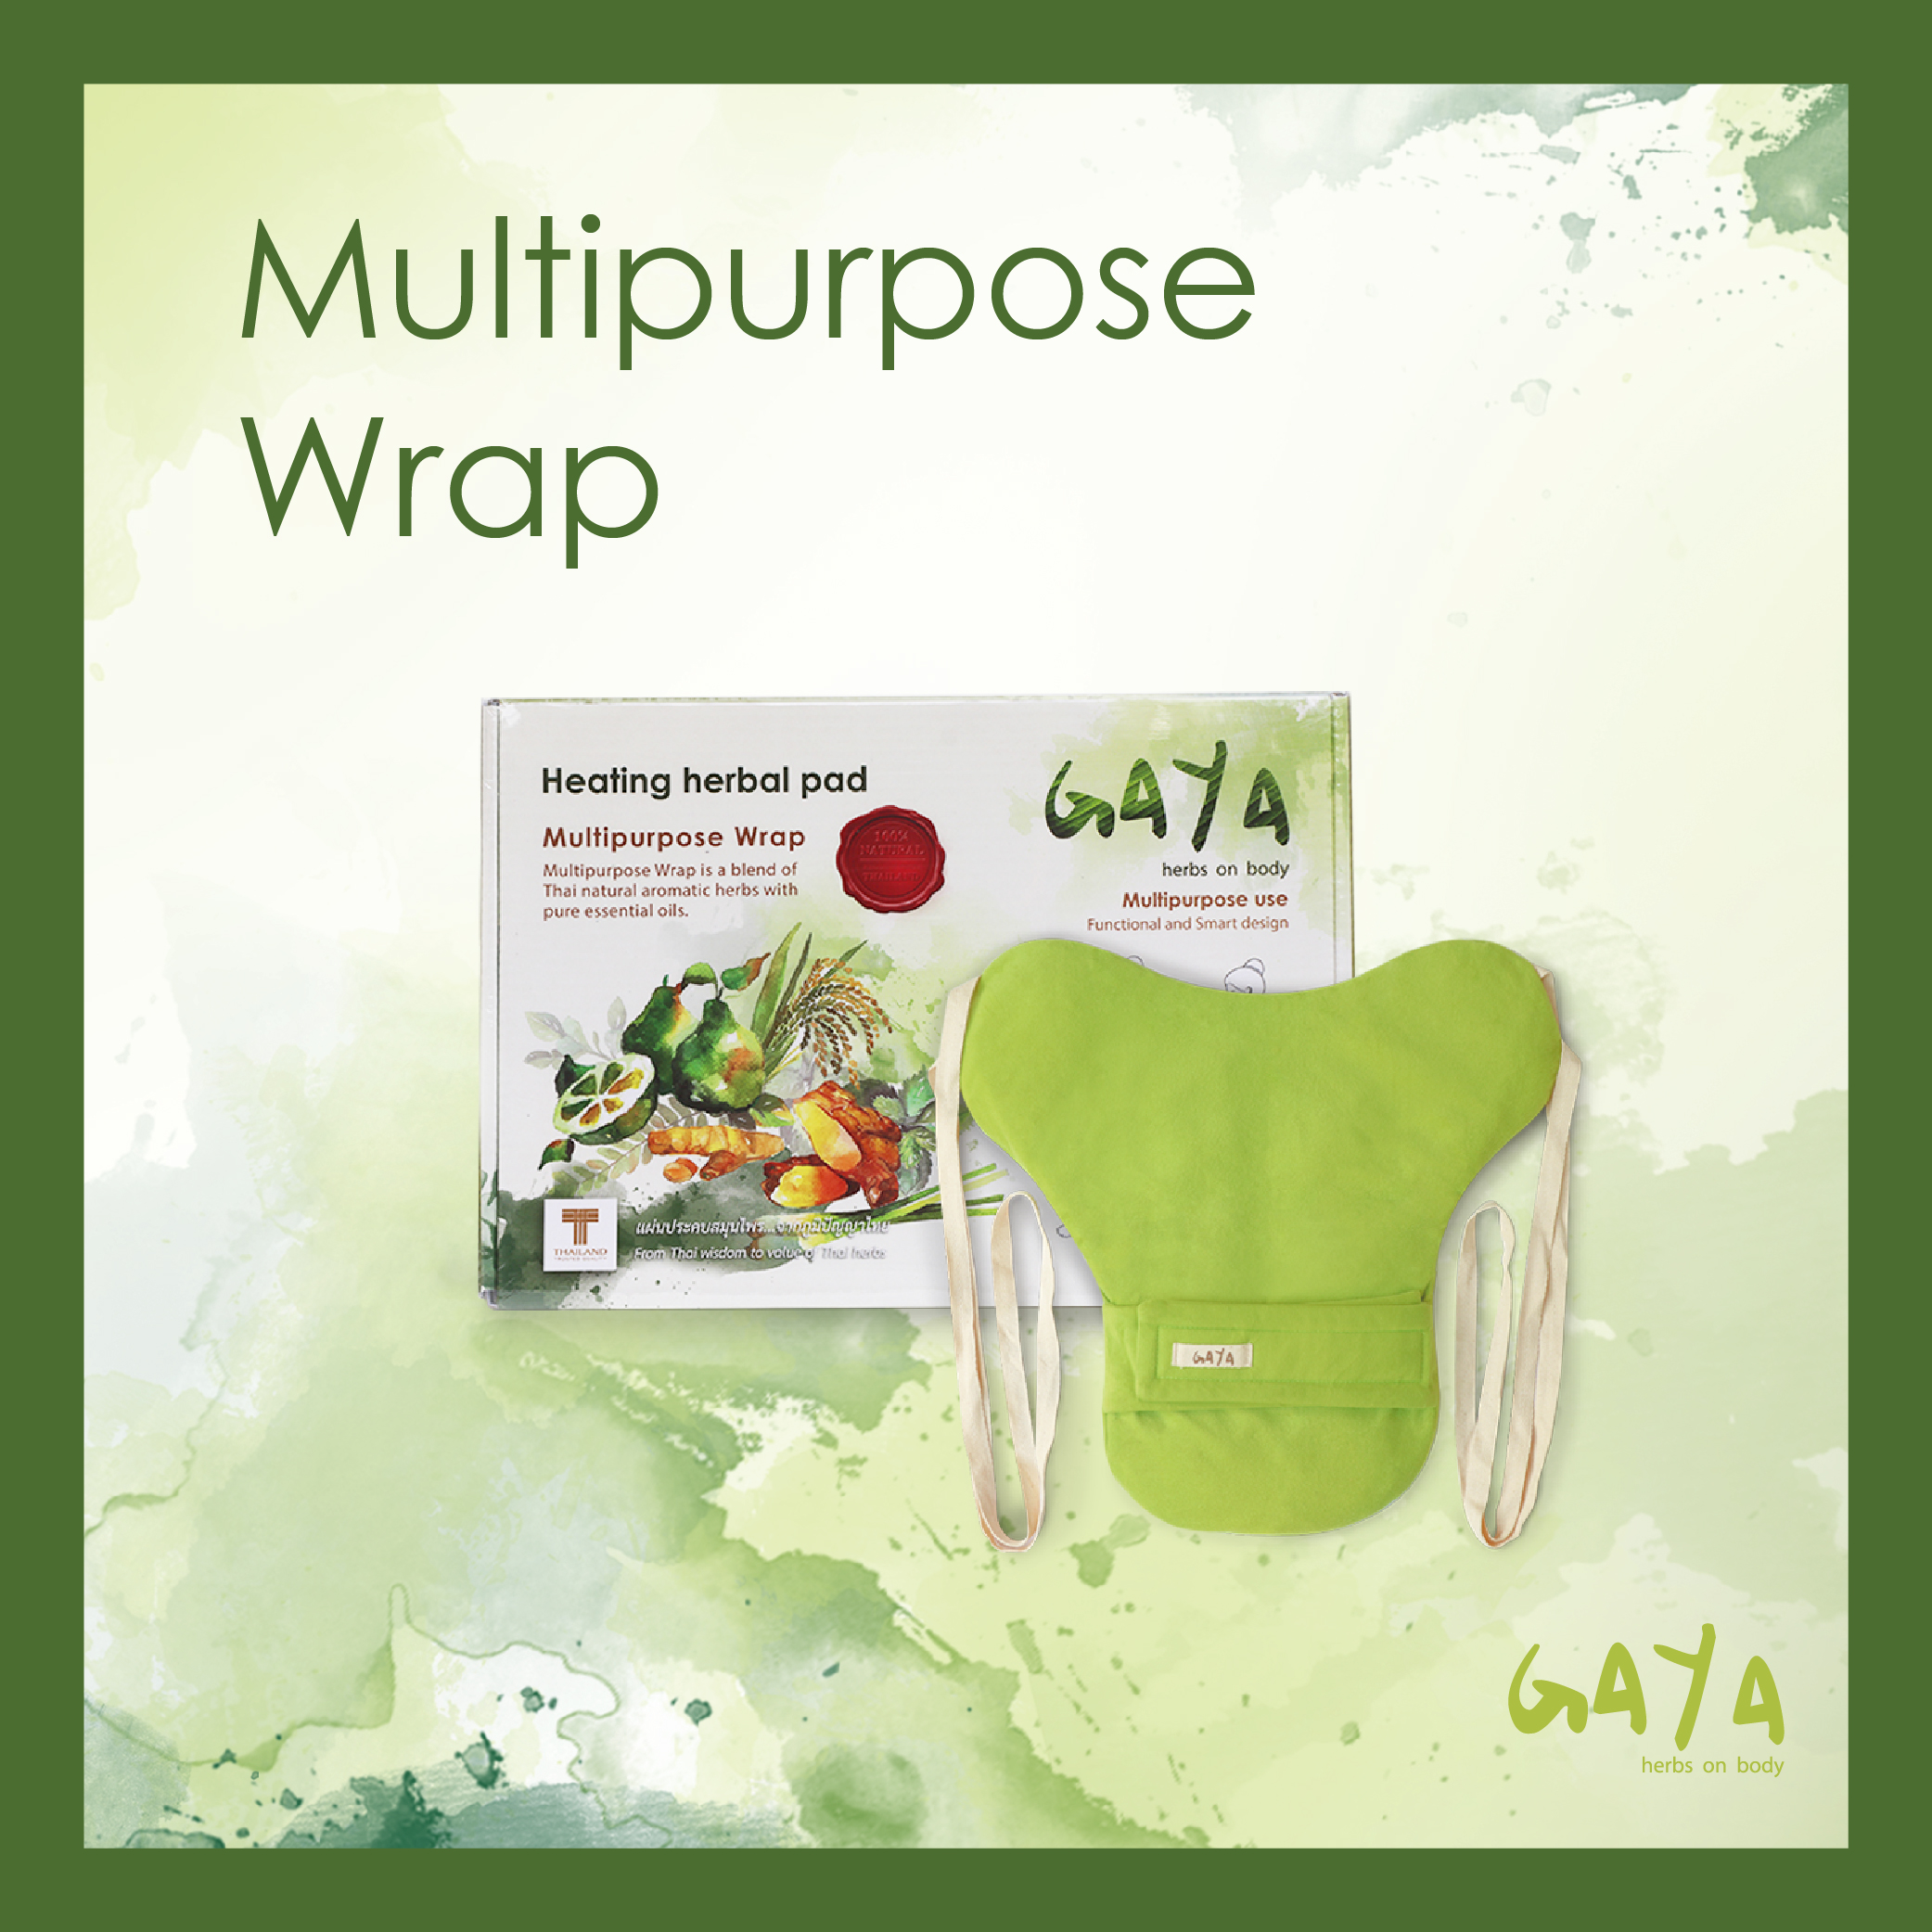 Multipurpose Wrap แผ่นประคบร้อนสมุนไพรที่สามารถใช้ประคบร้อนตามร่างกายได้อย่างเอนกประสงค์